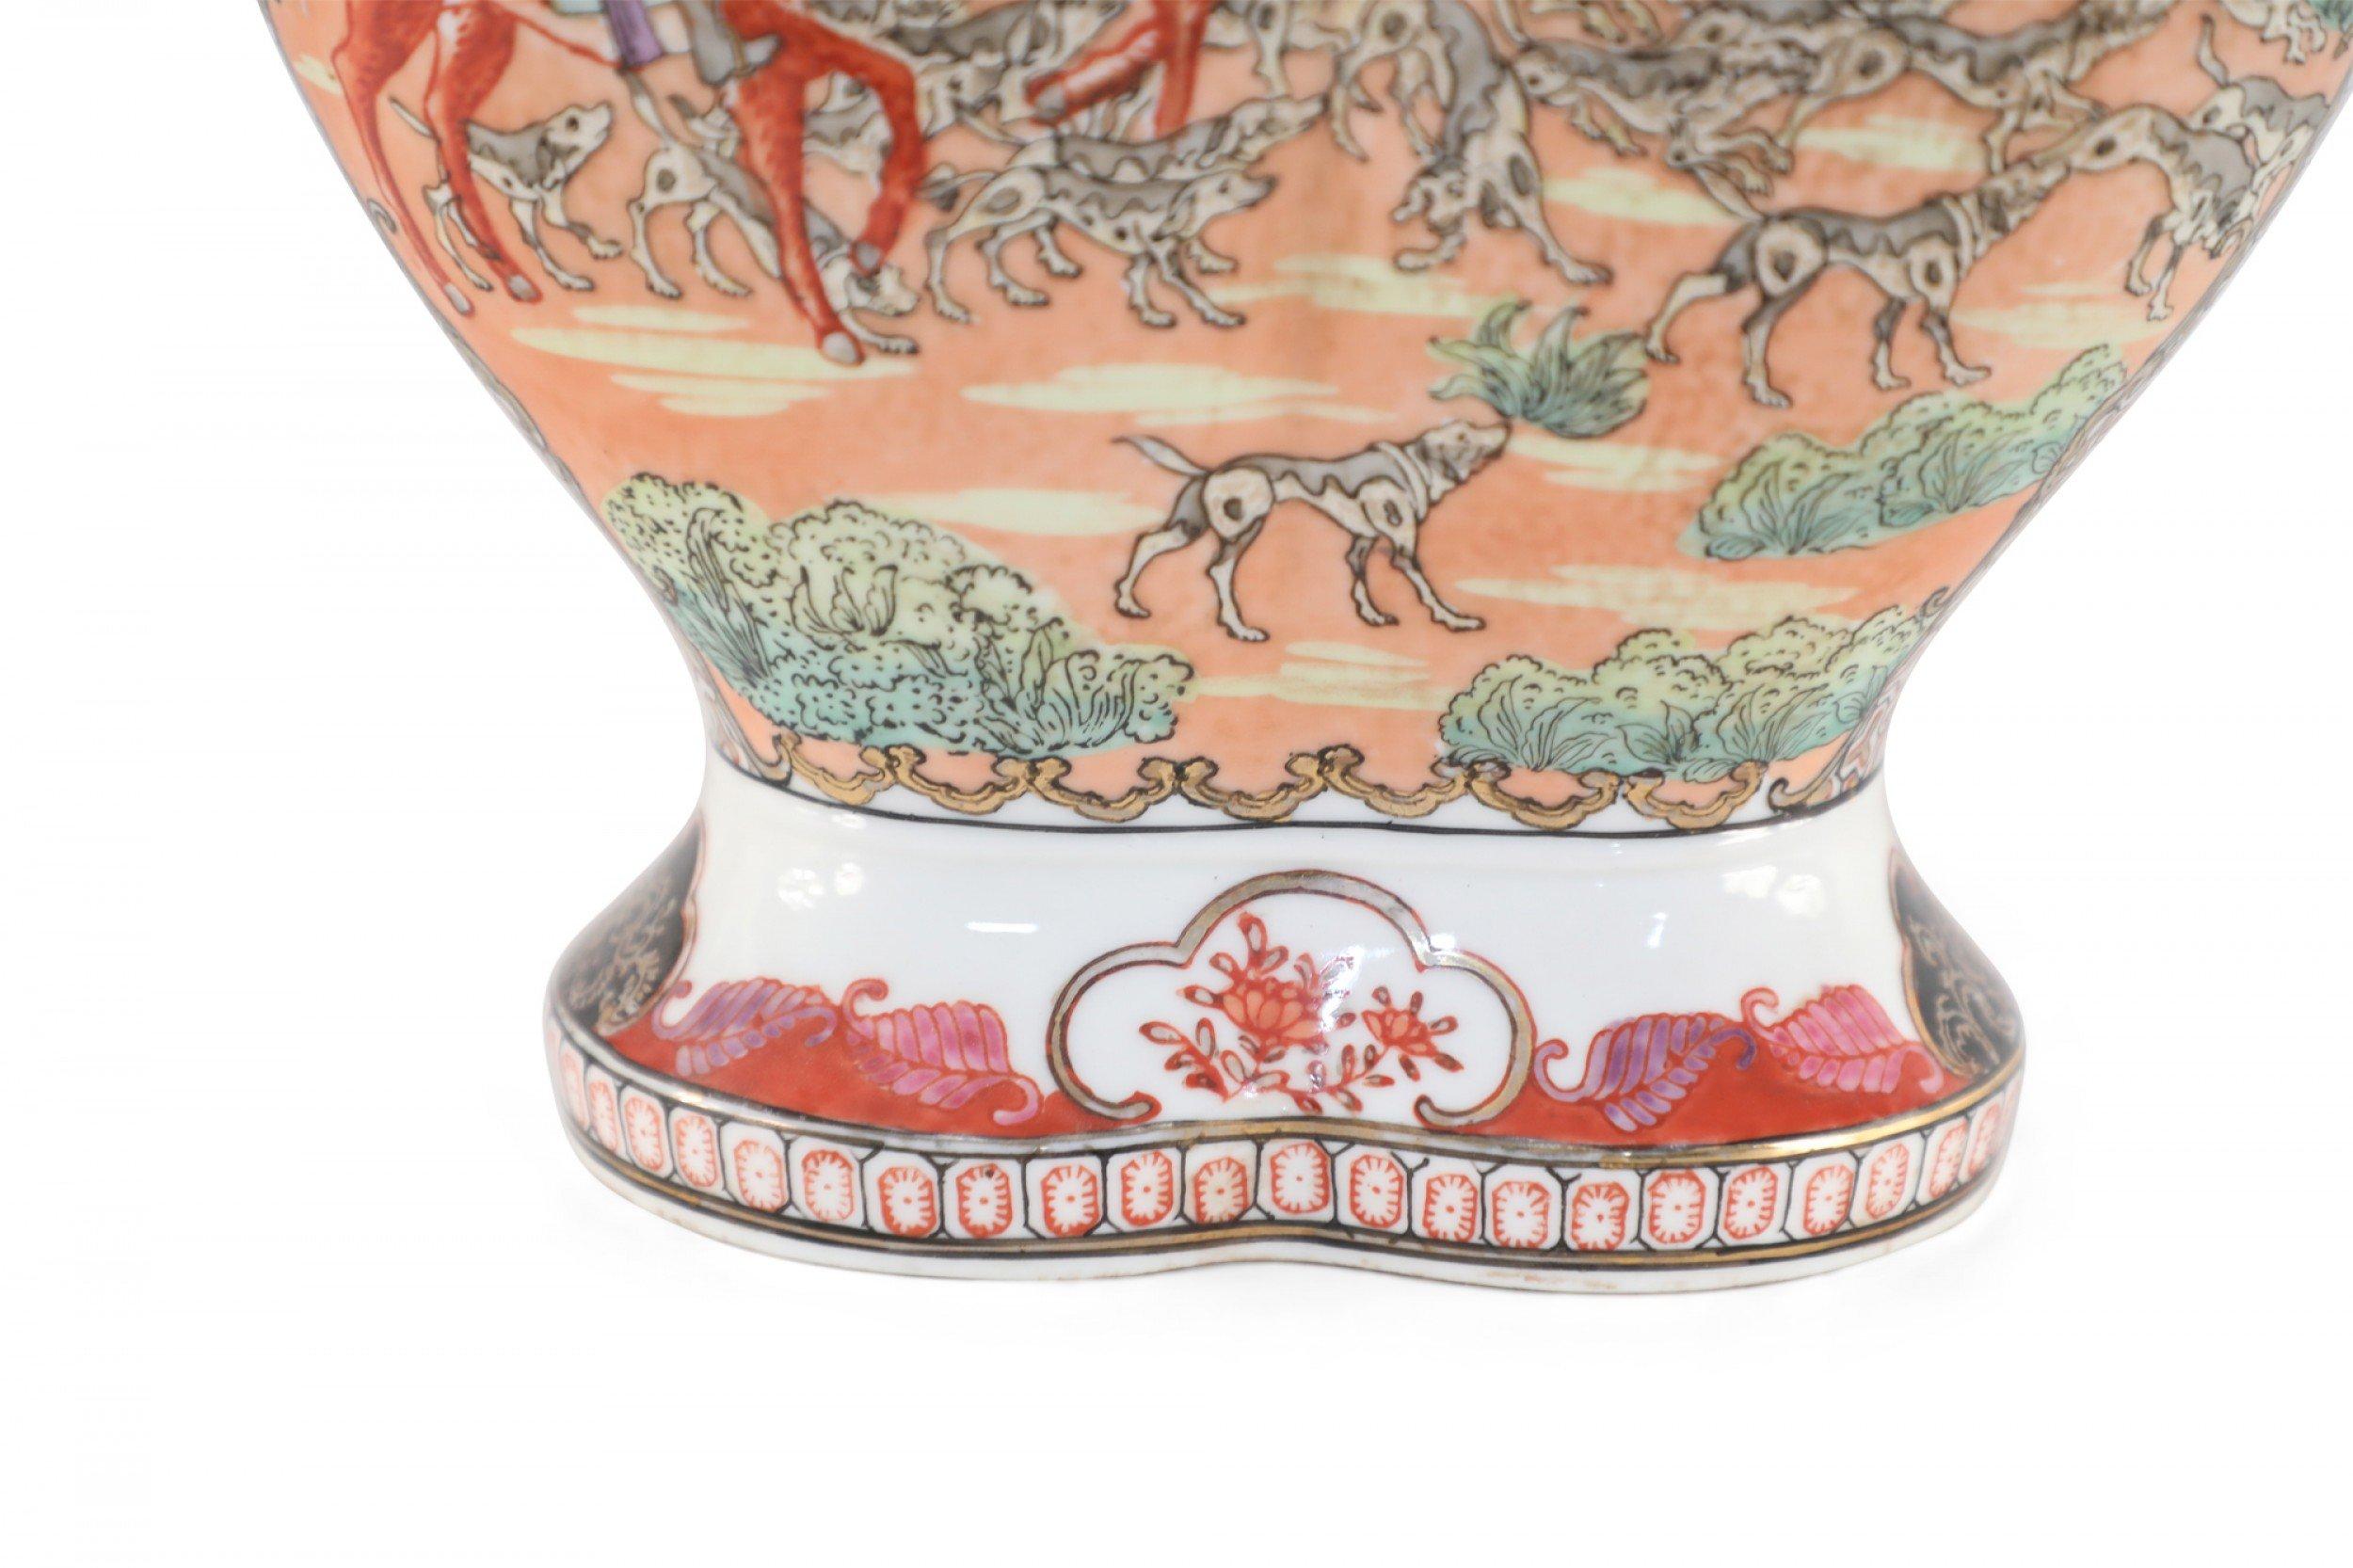 Vase antique chinois (début du 20e siècle) en porcelaine d'exportation peinte de Guangzhou avec une forme conjointe représentant une scène de chasse au chien richement colorée entre des bandes à motifs dorés.
 